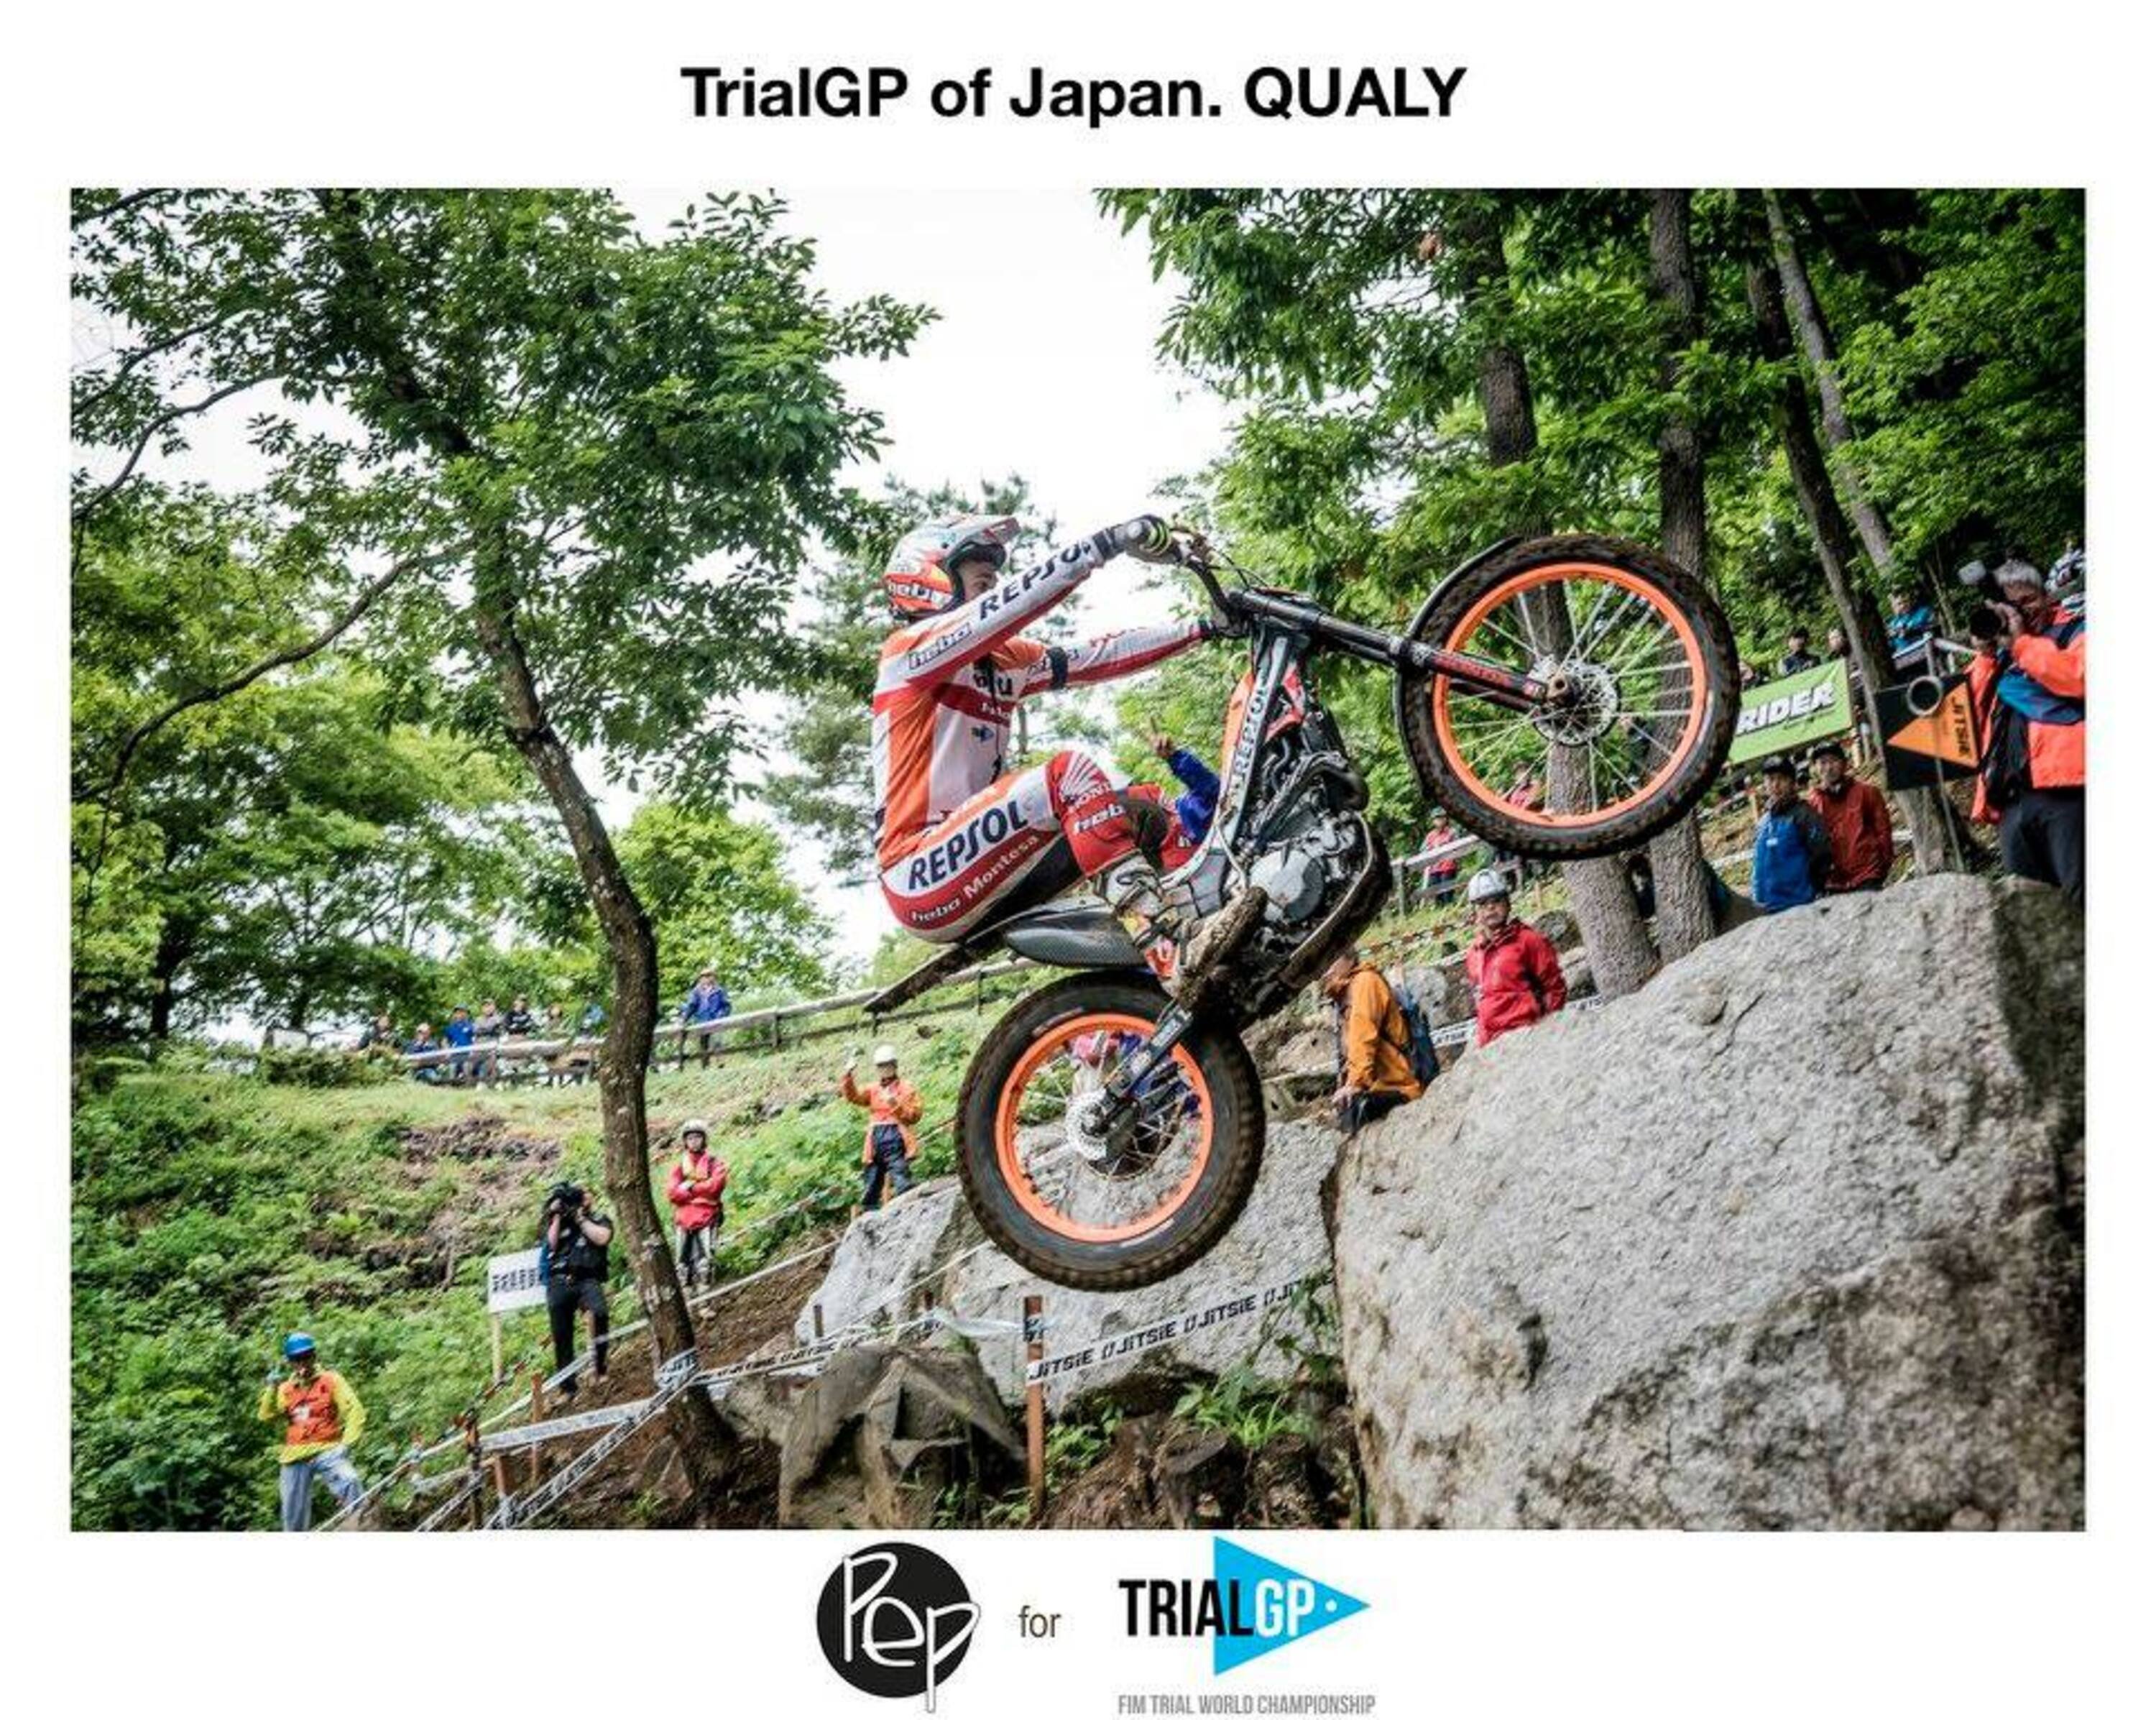 Mondiale Trial. Toni Bou raddoppia in Giappone